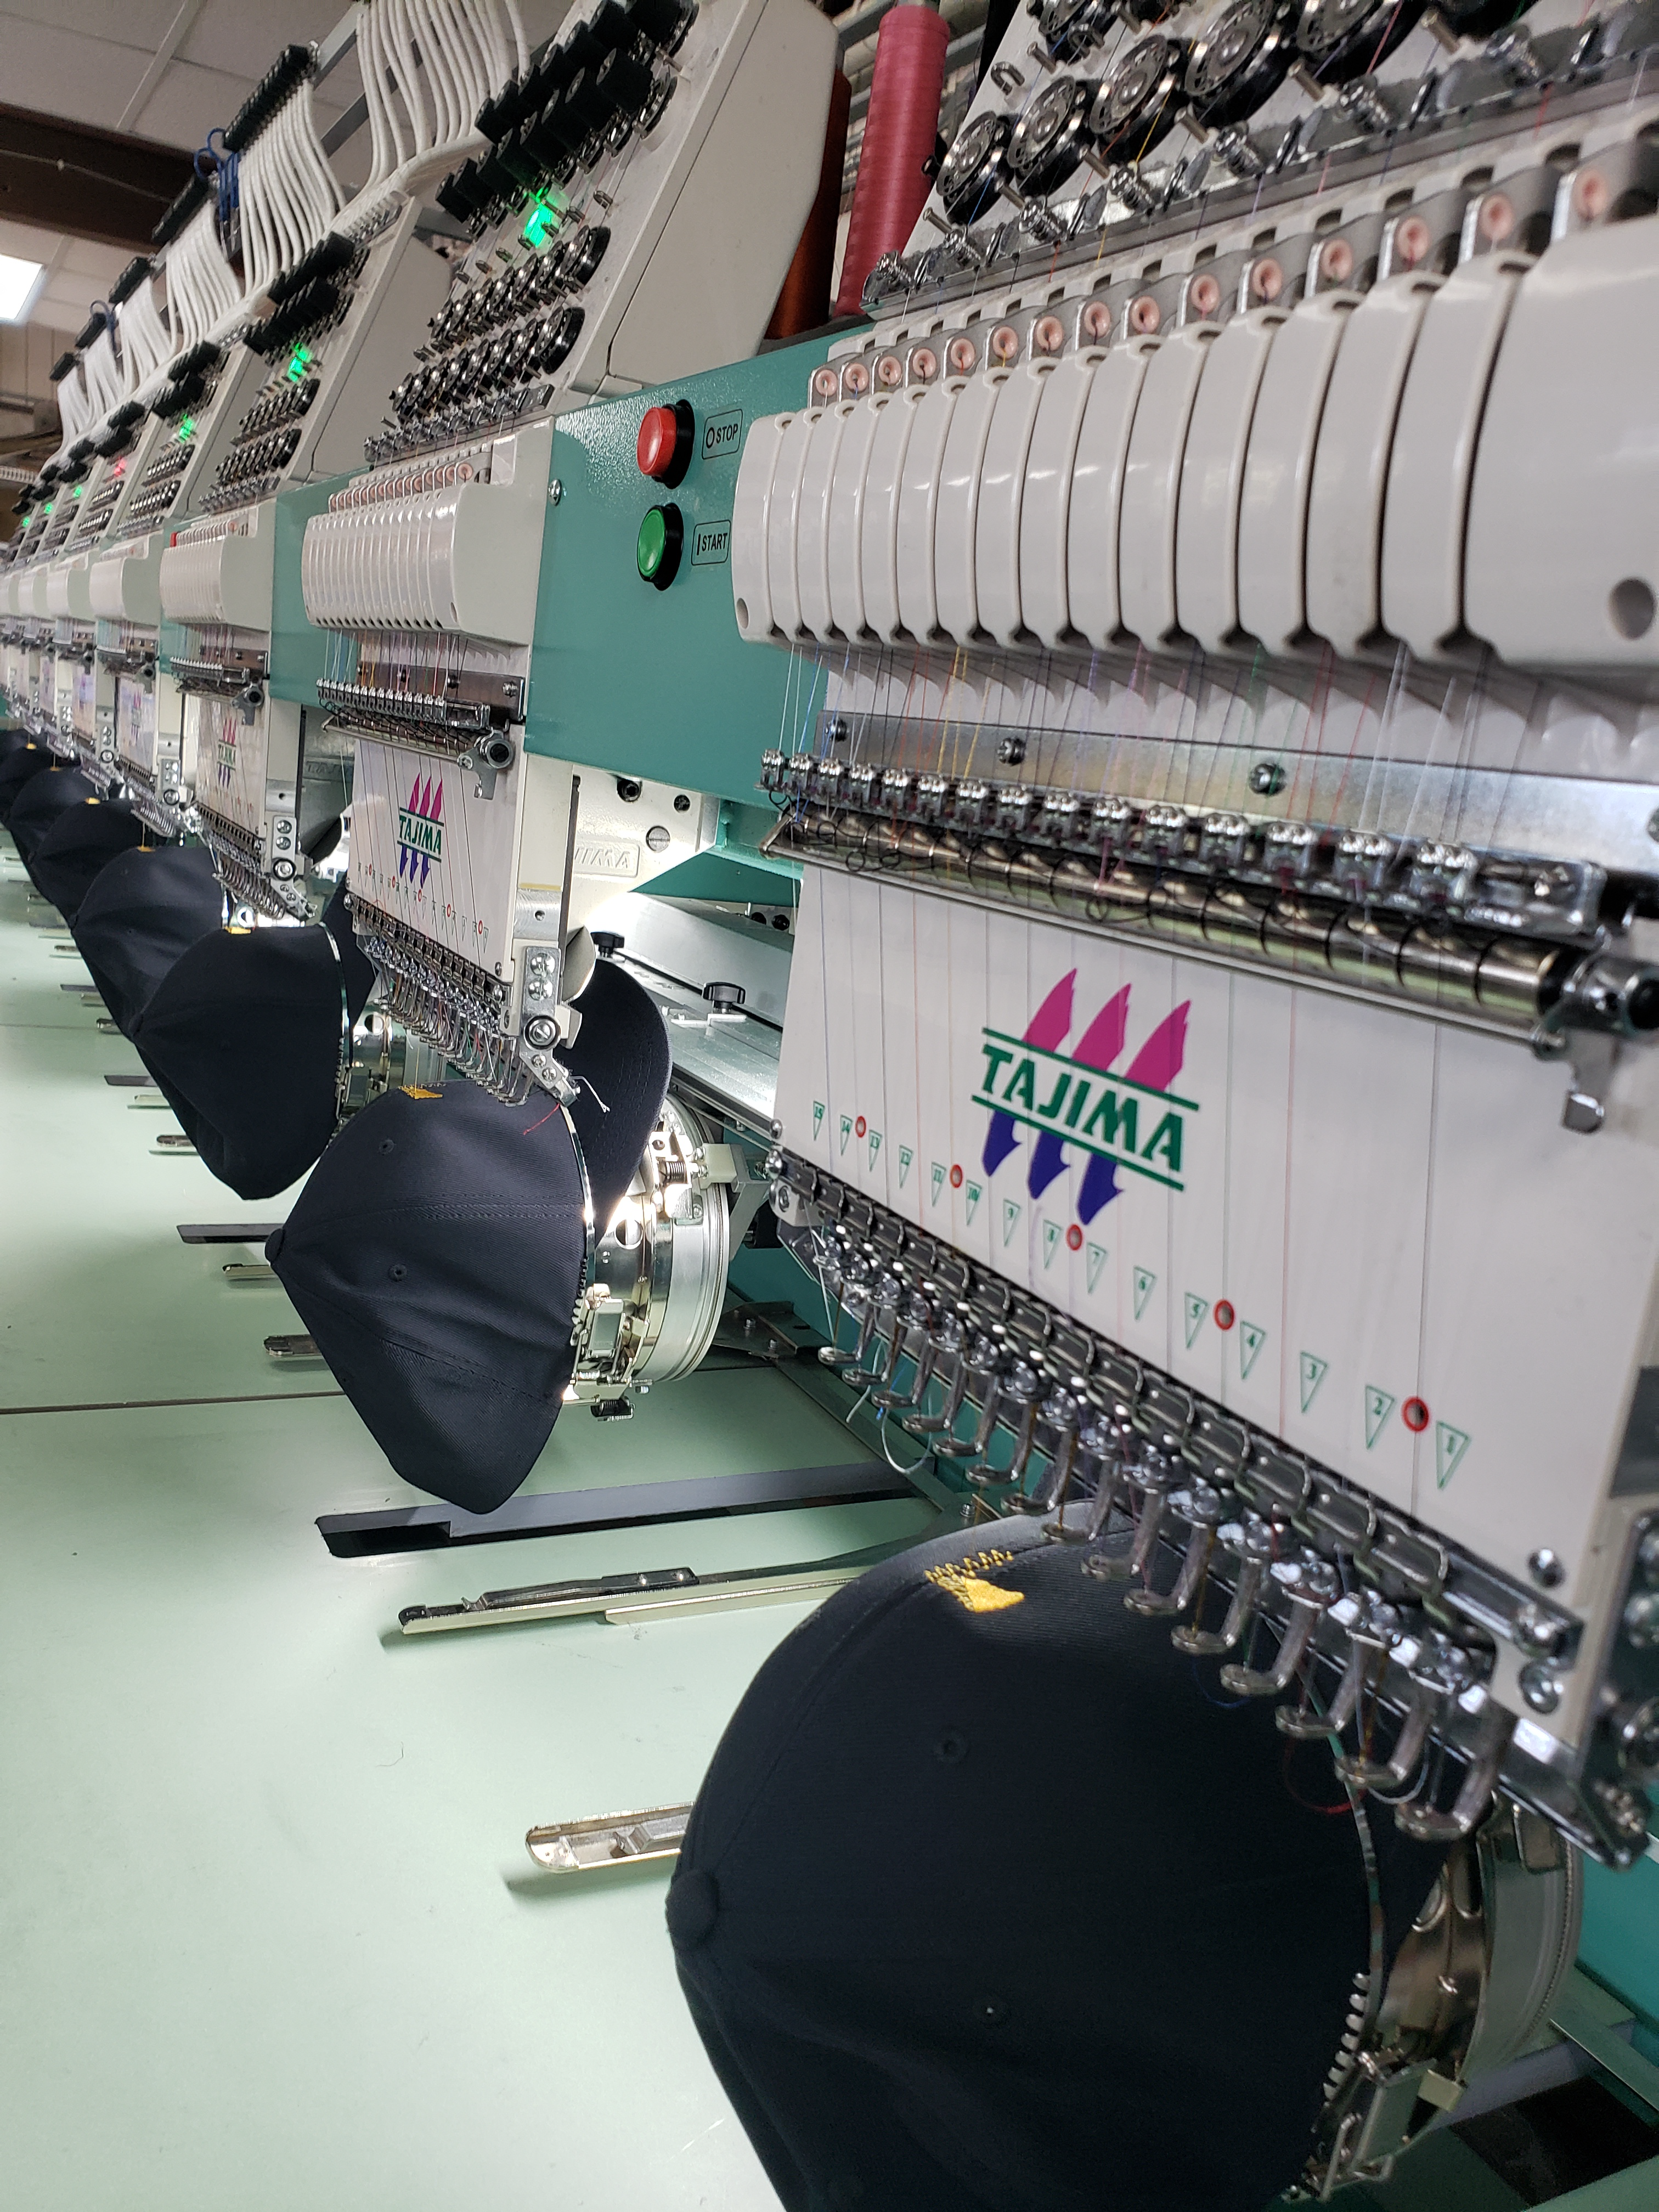 Multi head embroidery machine